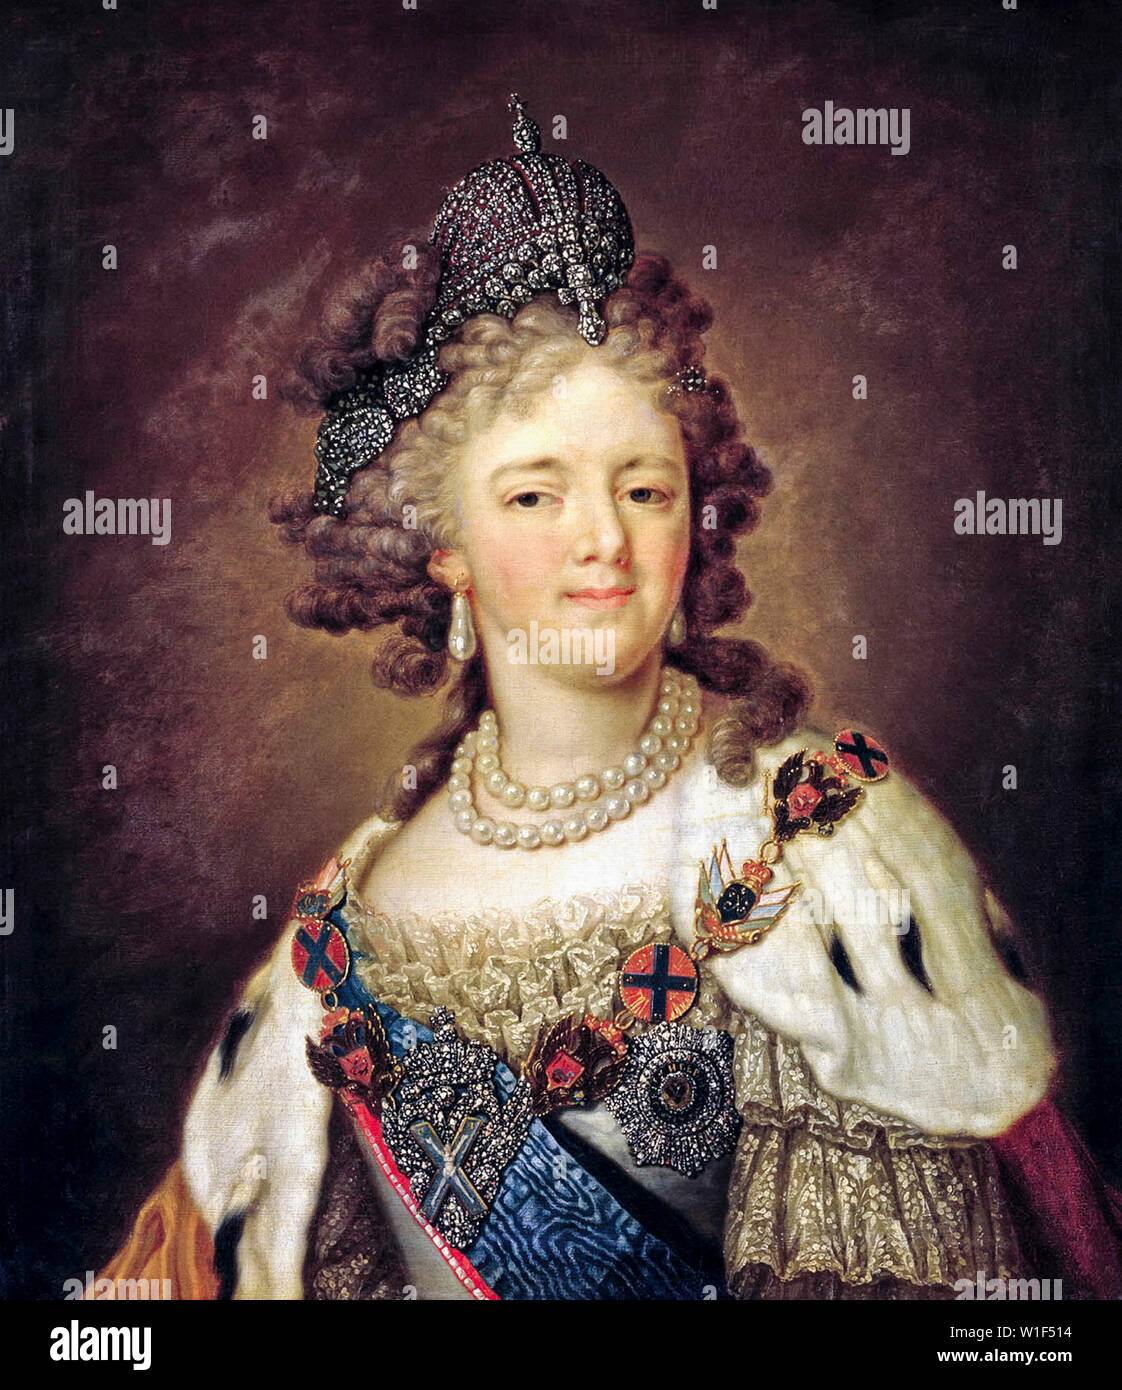 Vladimir Borovikovsky, Maria Feodorovna, Imperatrice consorte di Russia, 1759-1828, ritratto dipinto, circa 1799 Foto Stock